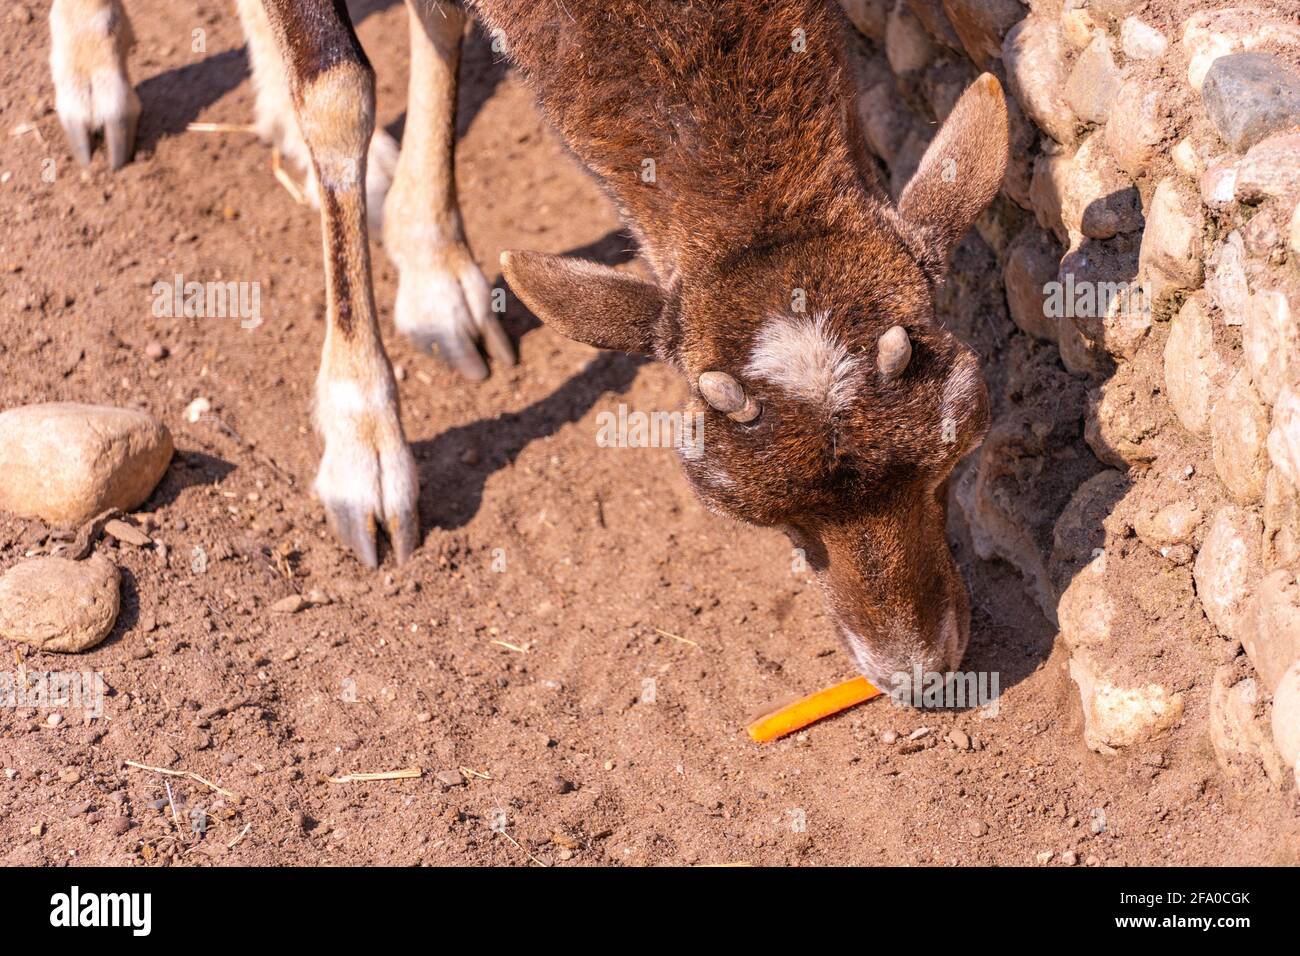 La chèvre de mouflon d'europe mange une carotte, un mouton dans l'après-midi en gros plan Banque D'Images